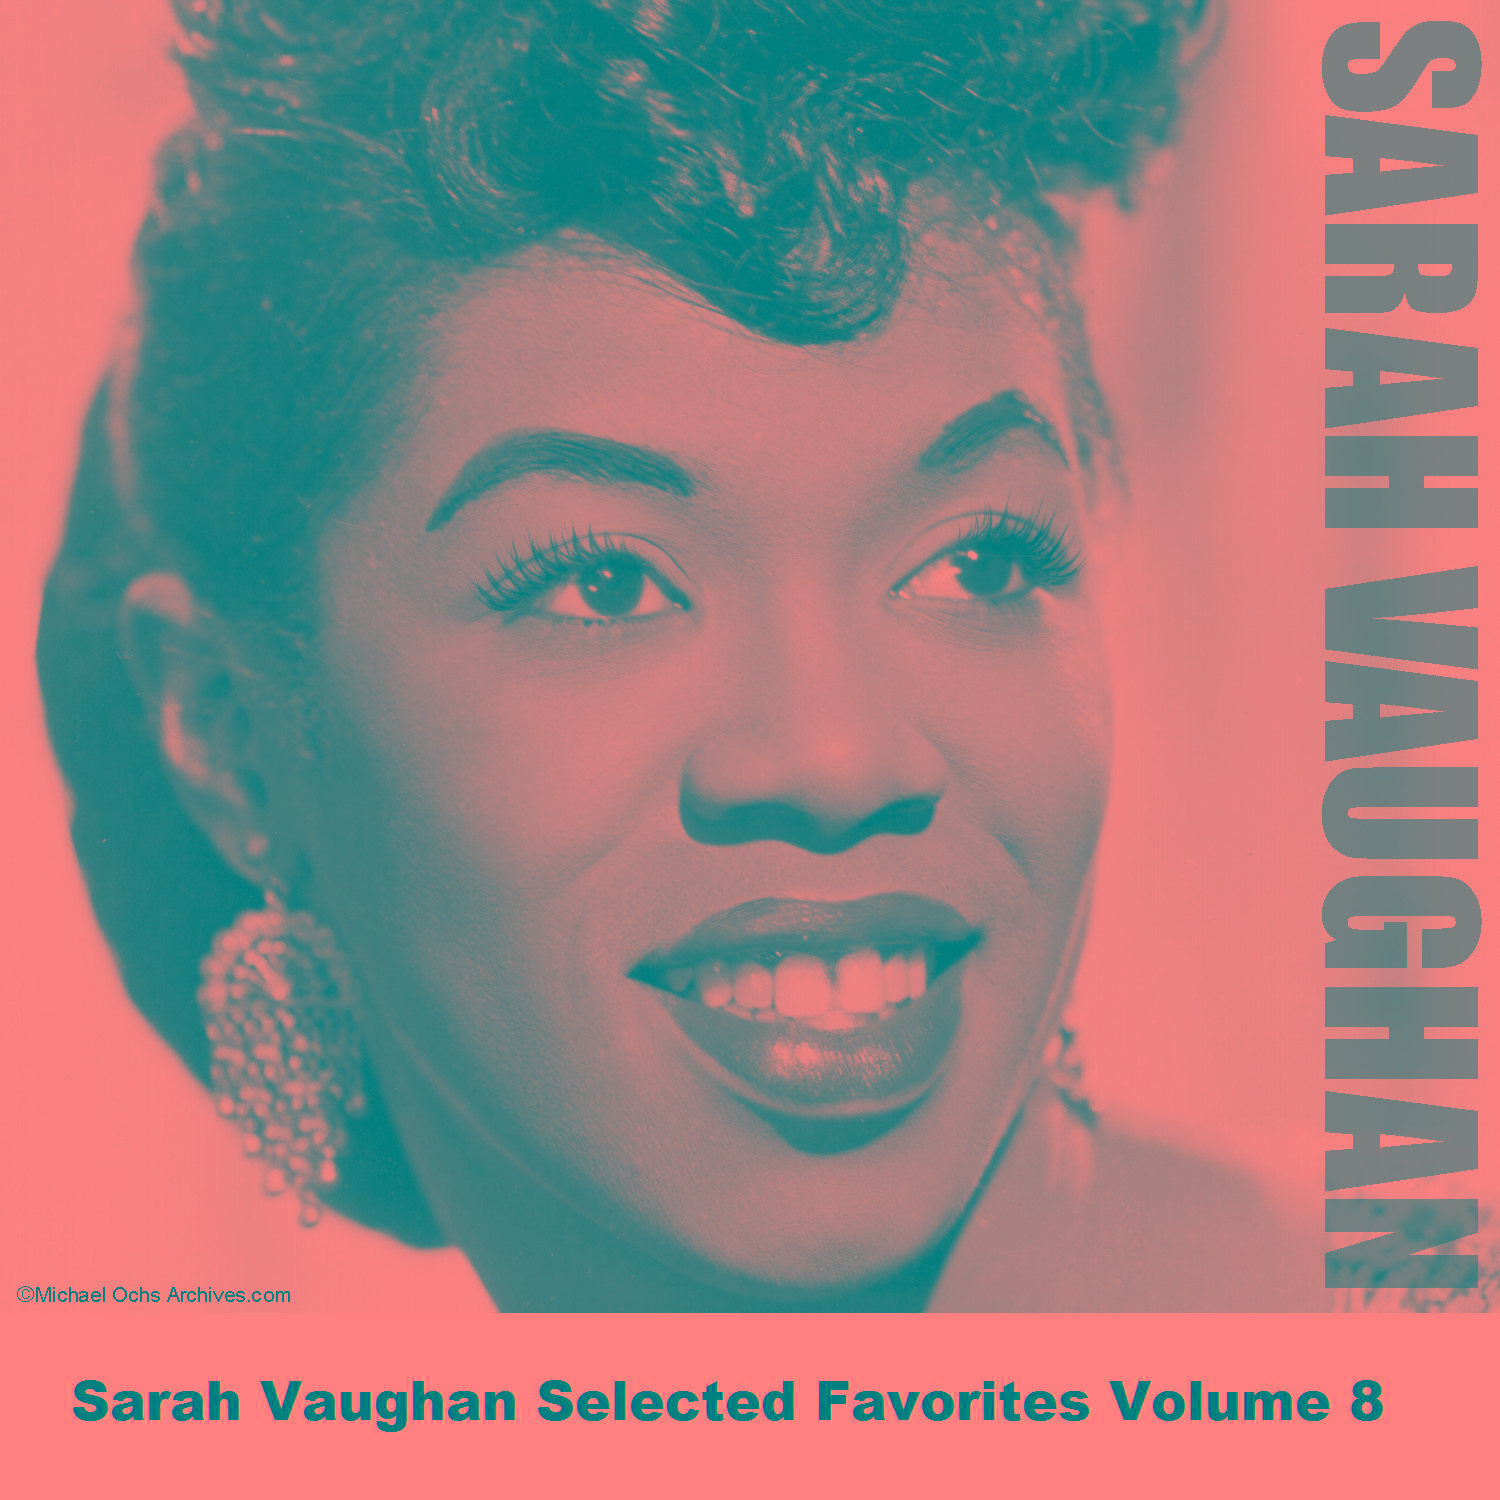 Sarah Vaughan Selected Favorites Volume 8